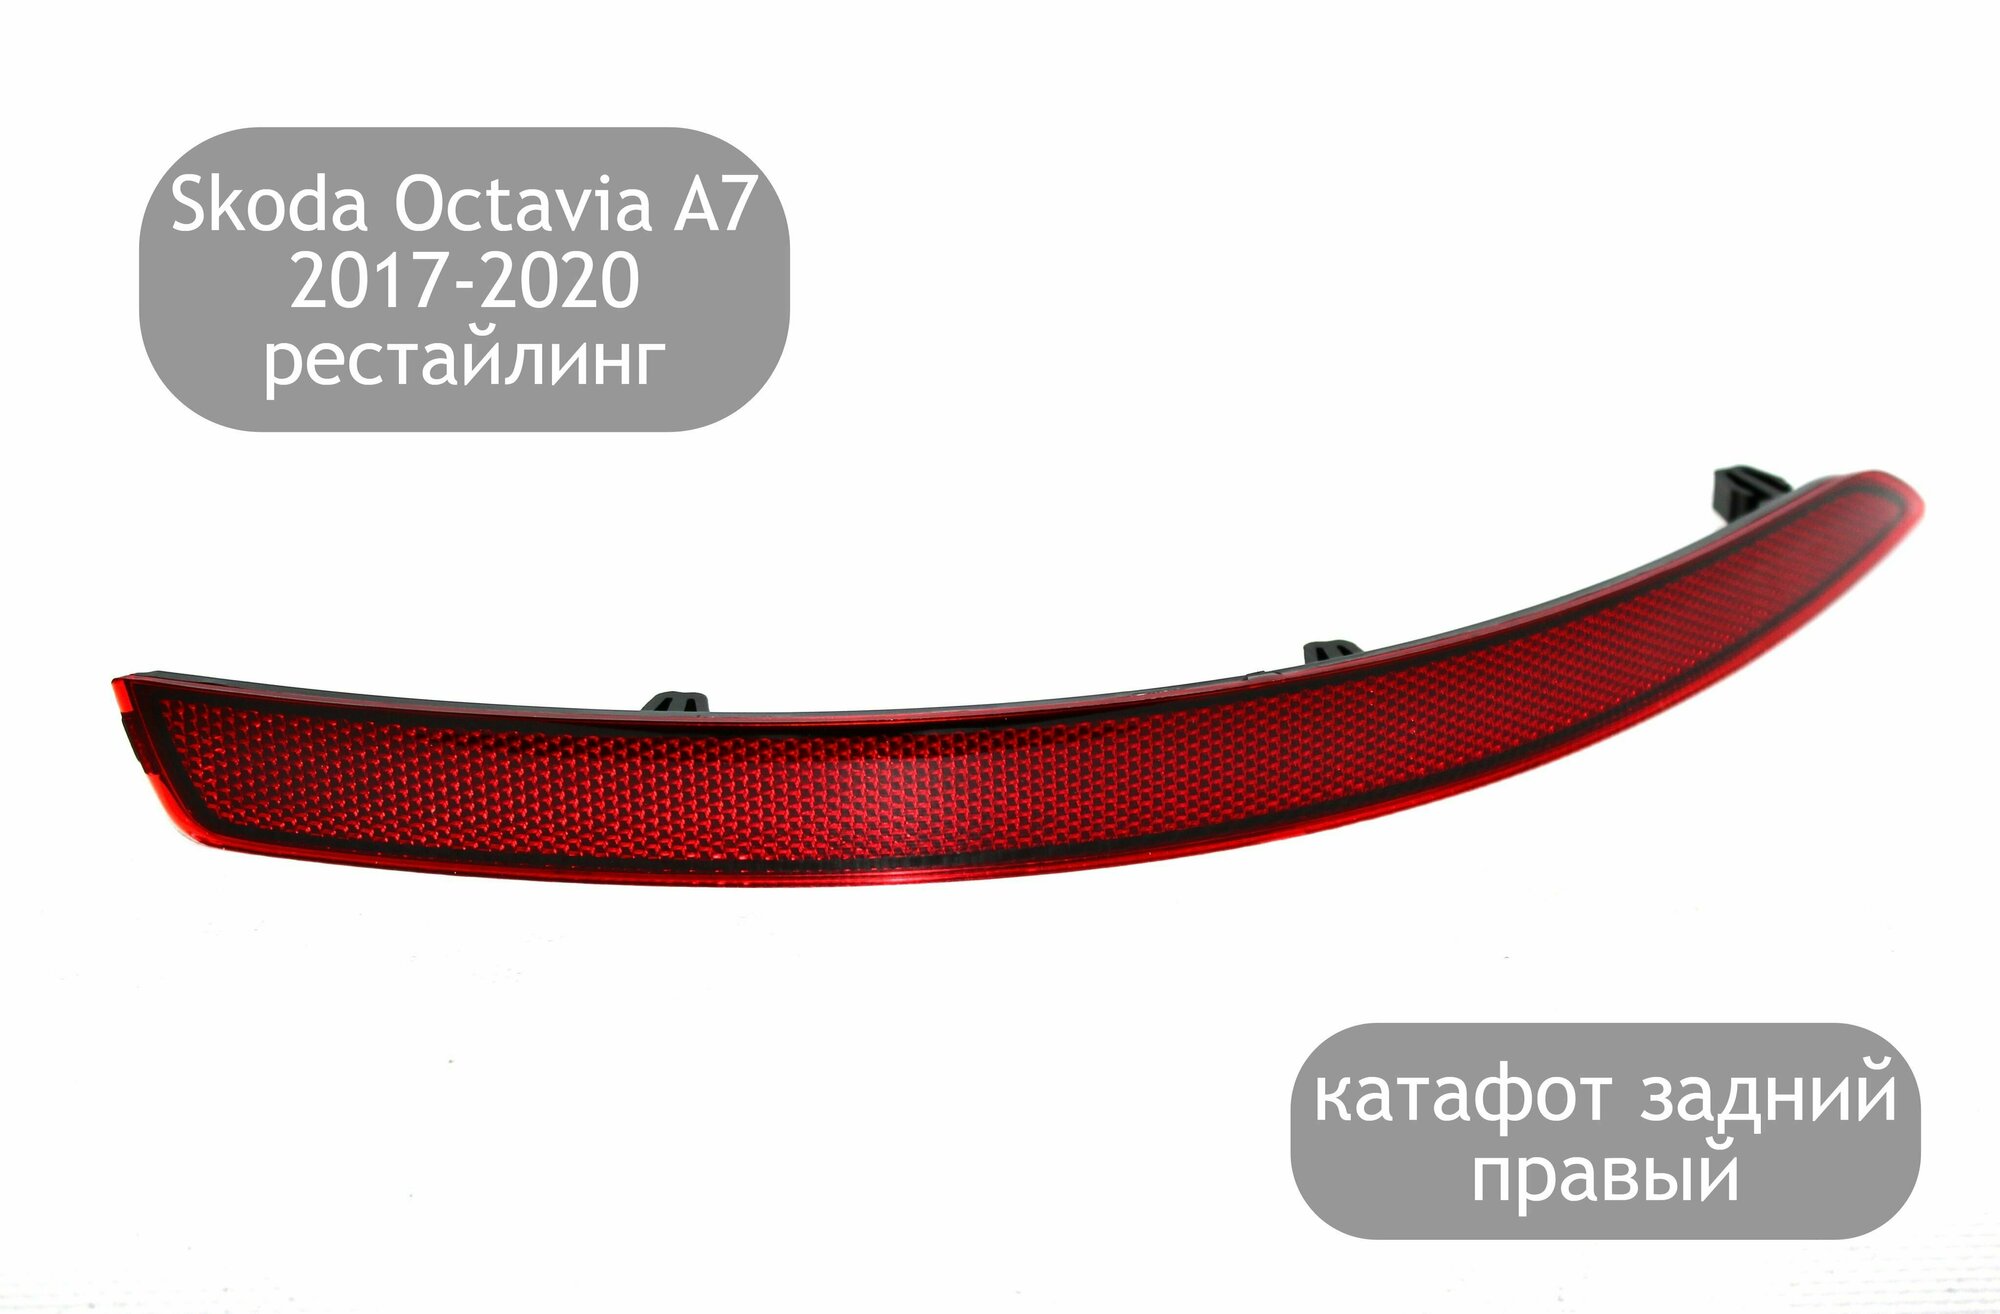 Катафот задний правый для Skoda Octavia A7 2017-2020 (рестайлинг)